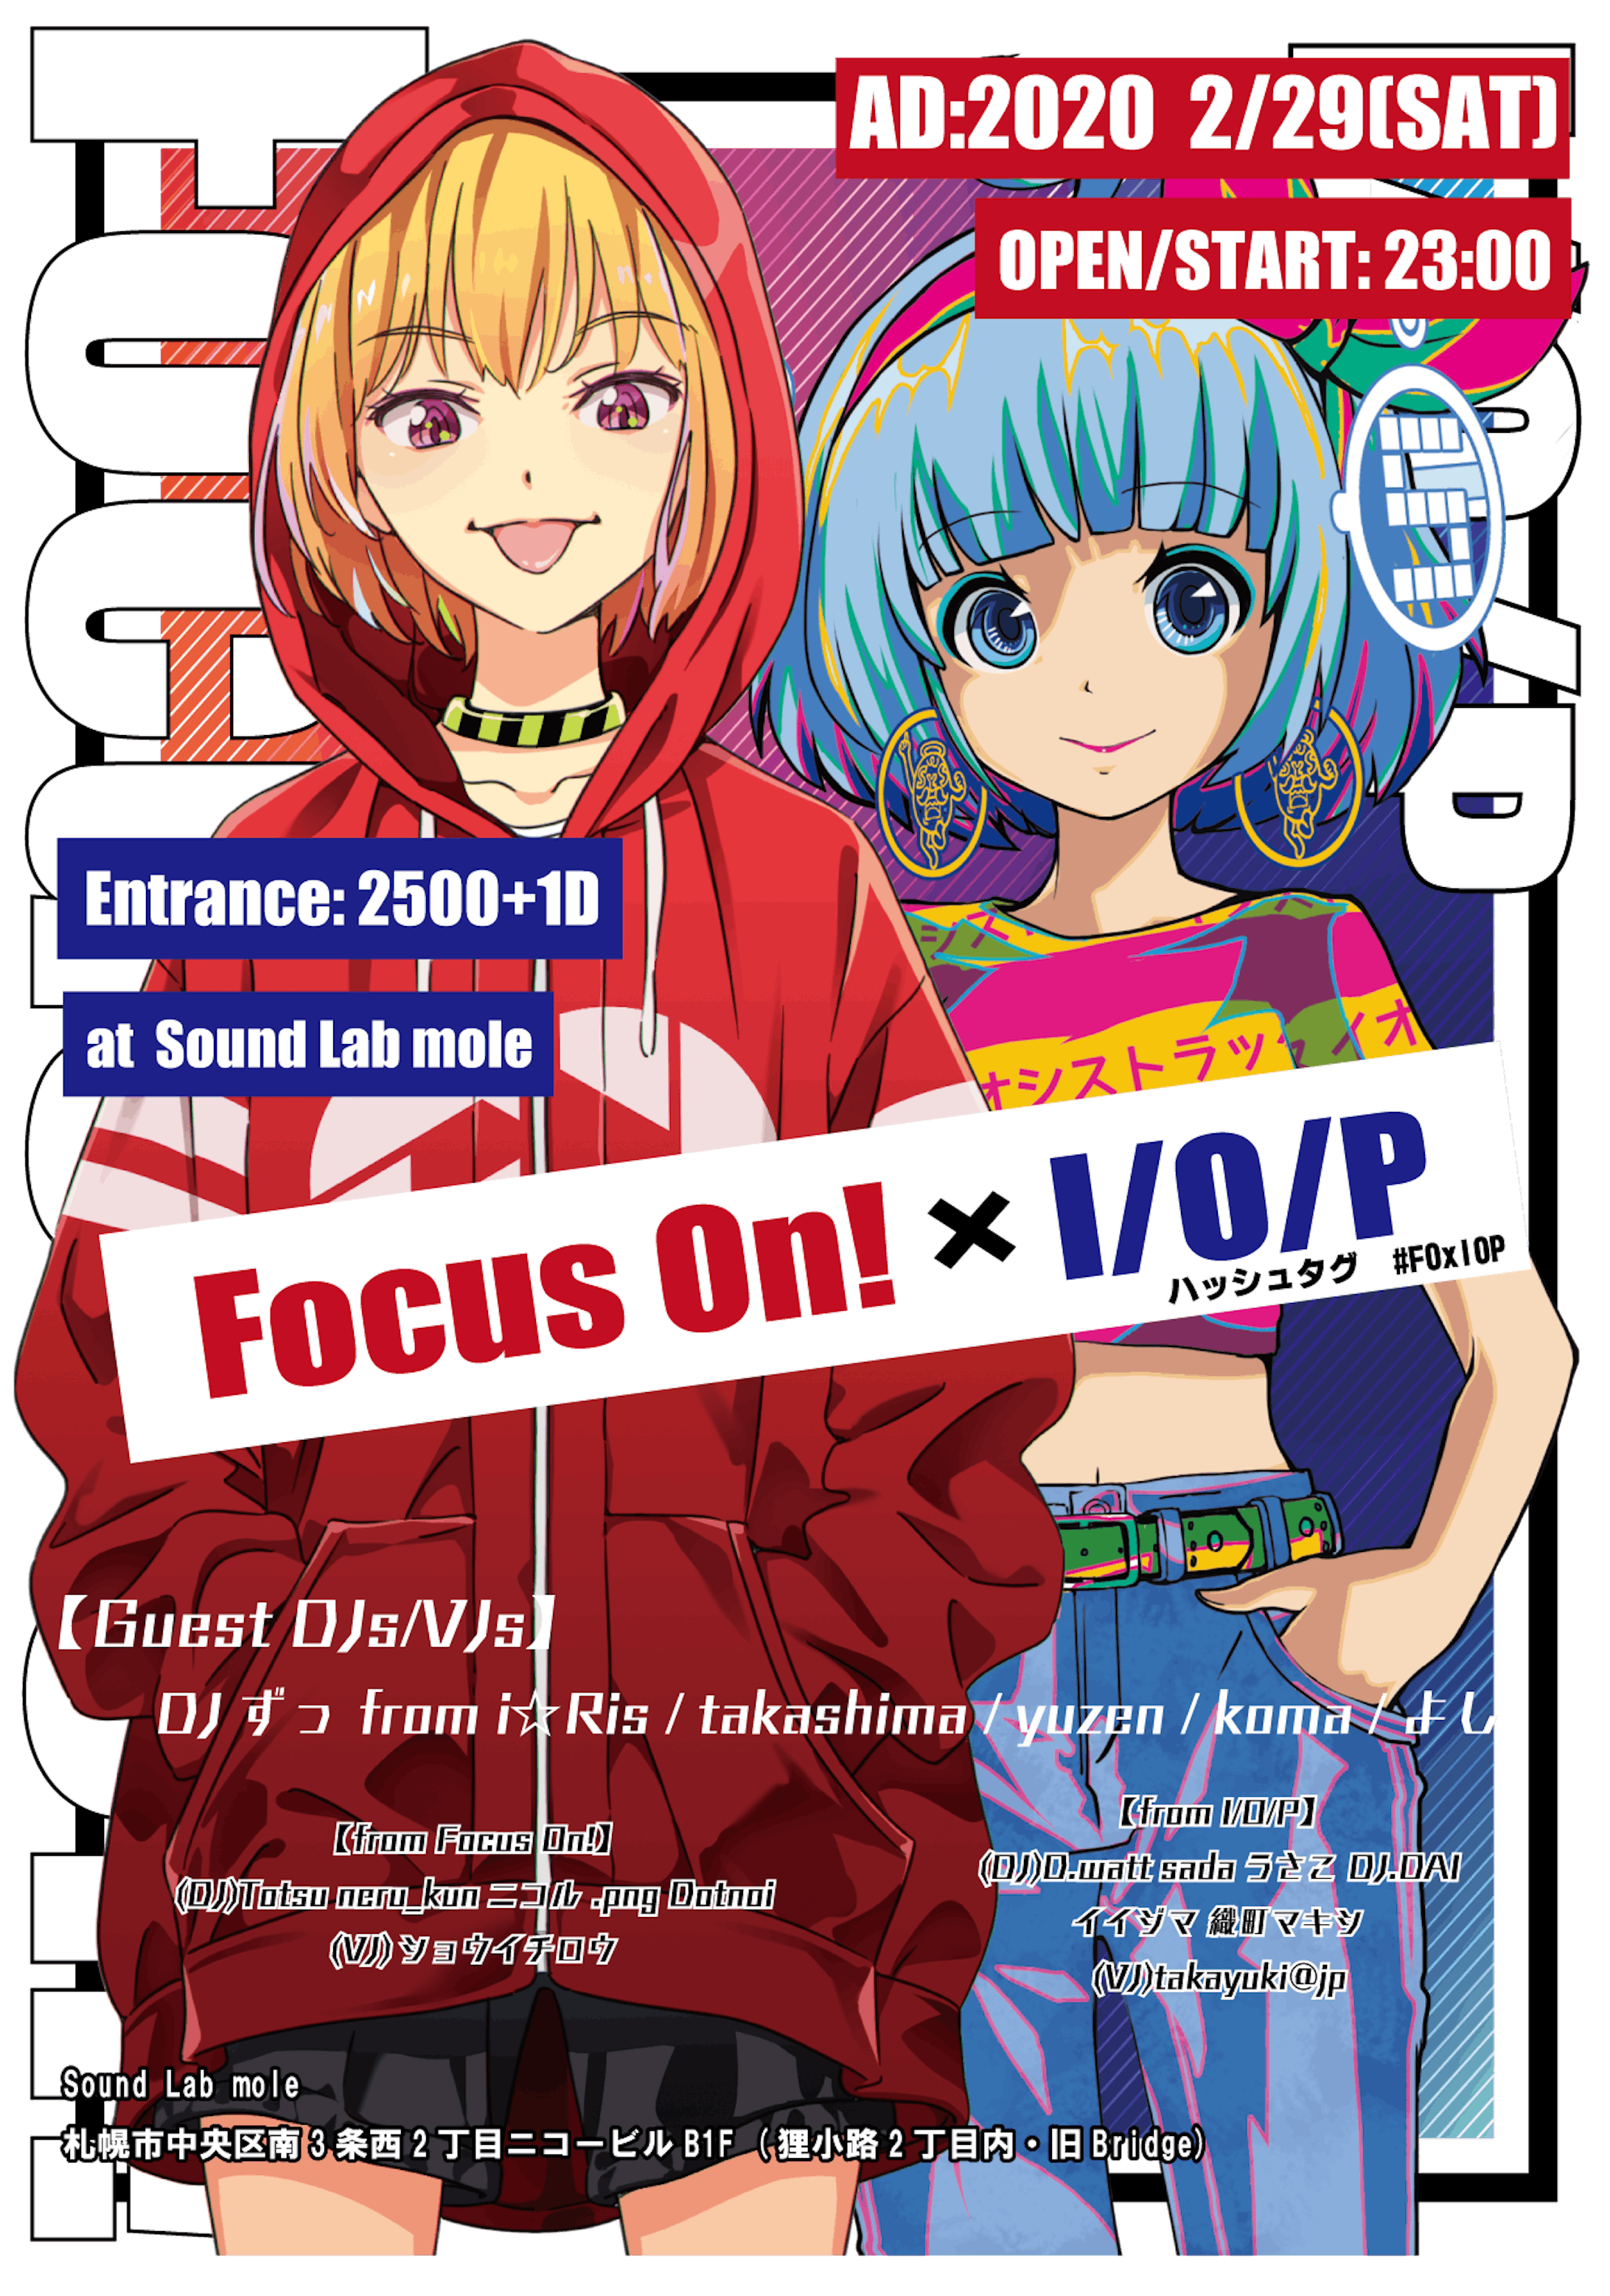 Focus On!×I/O/P　イベントフライヤー-1